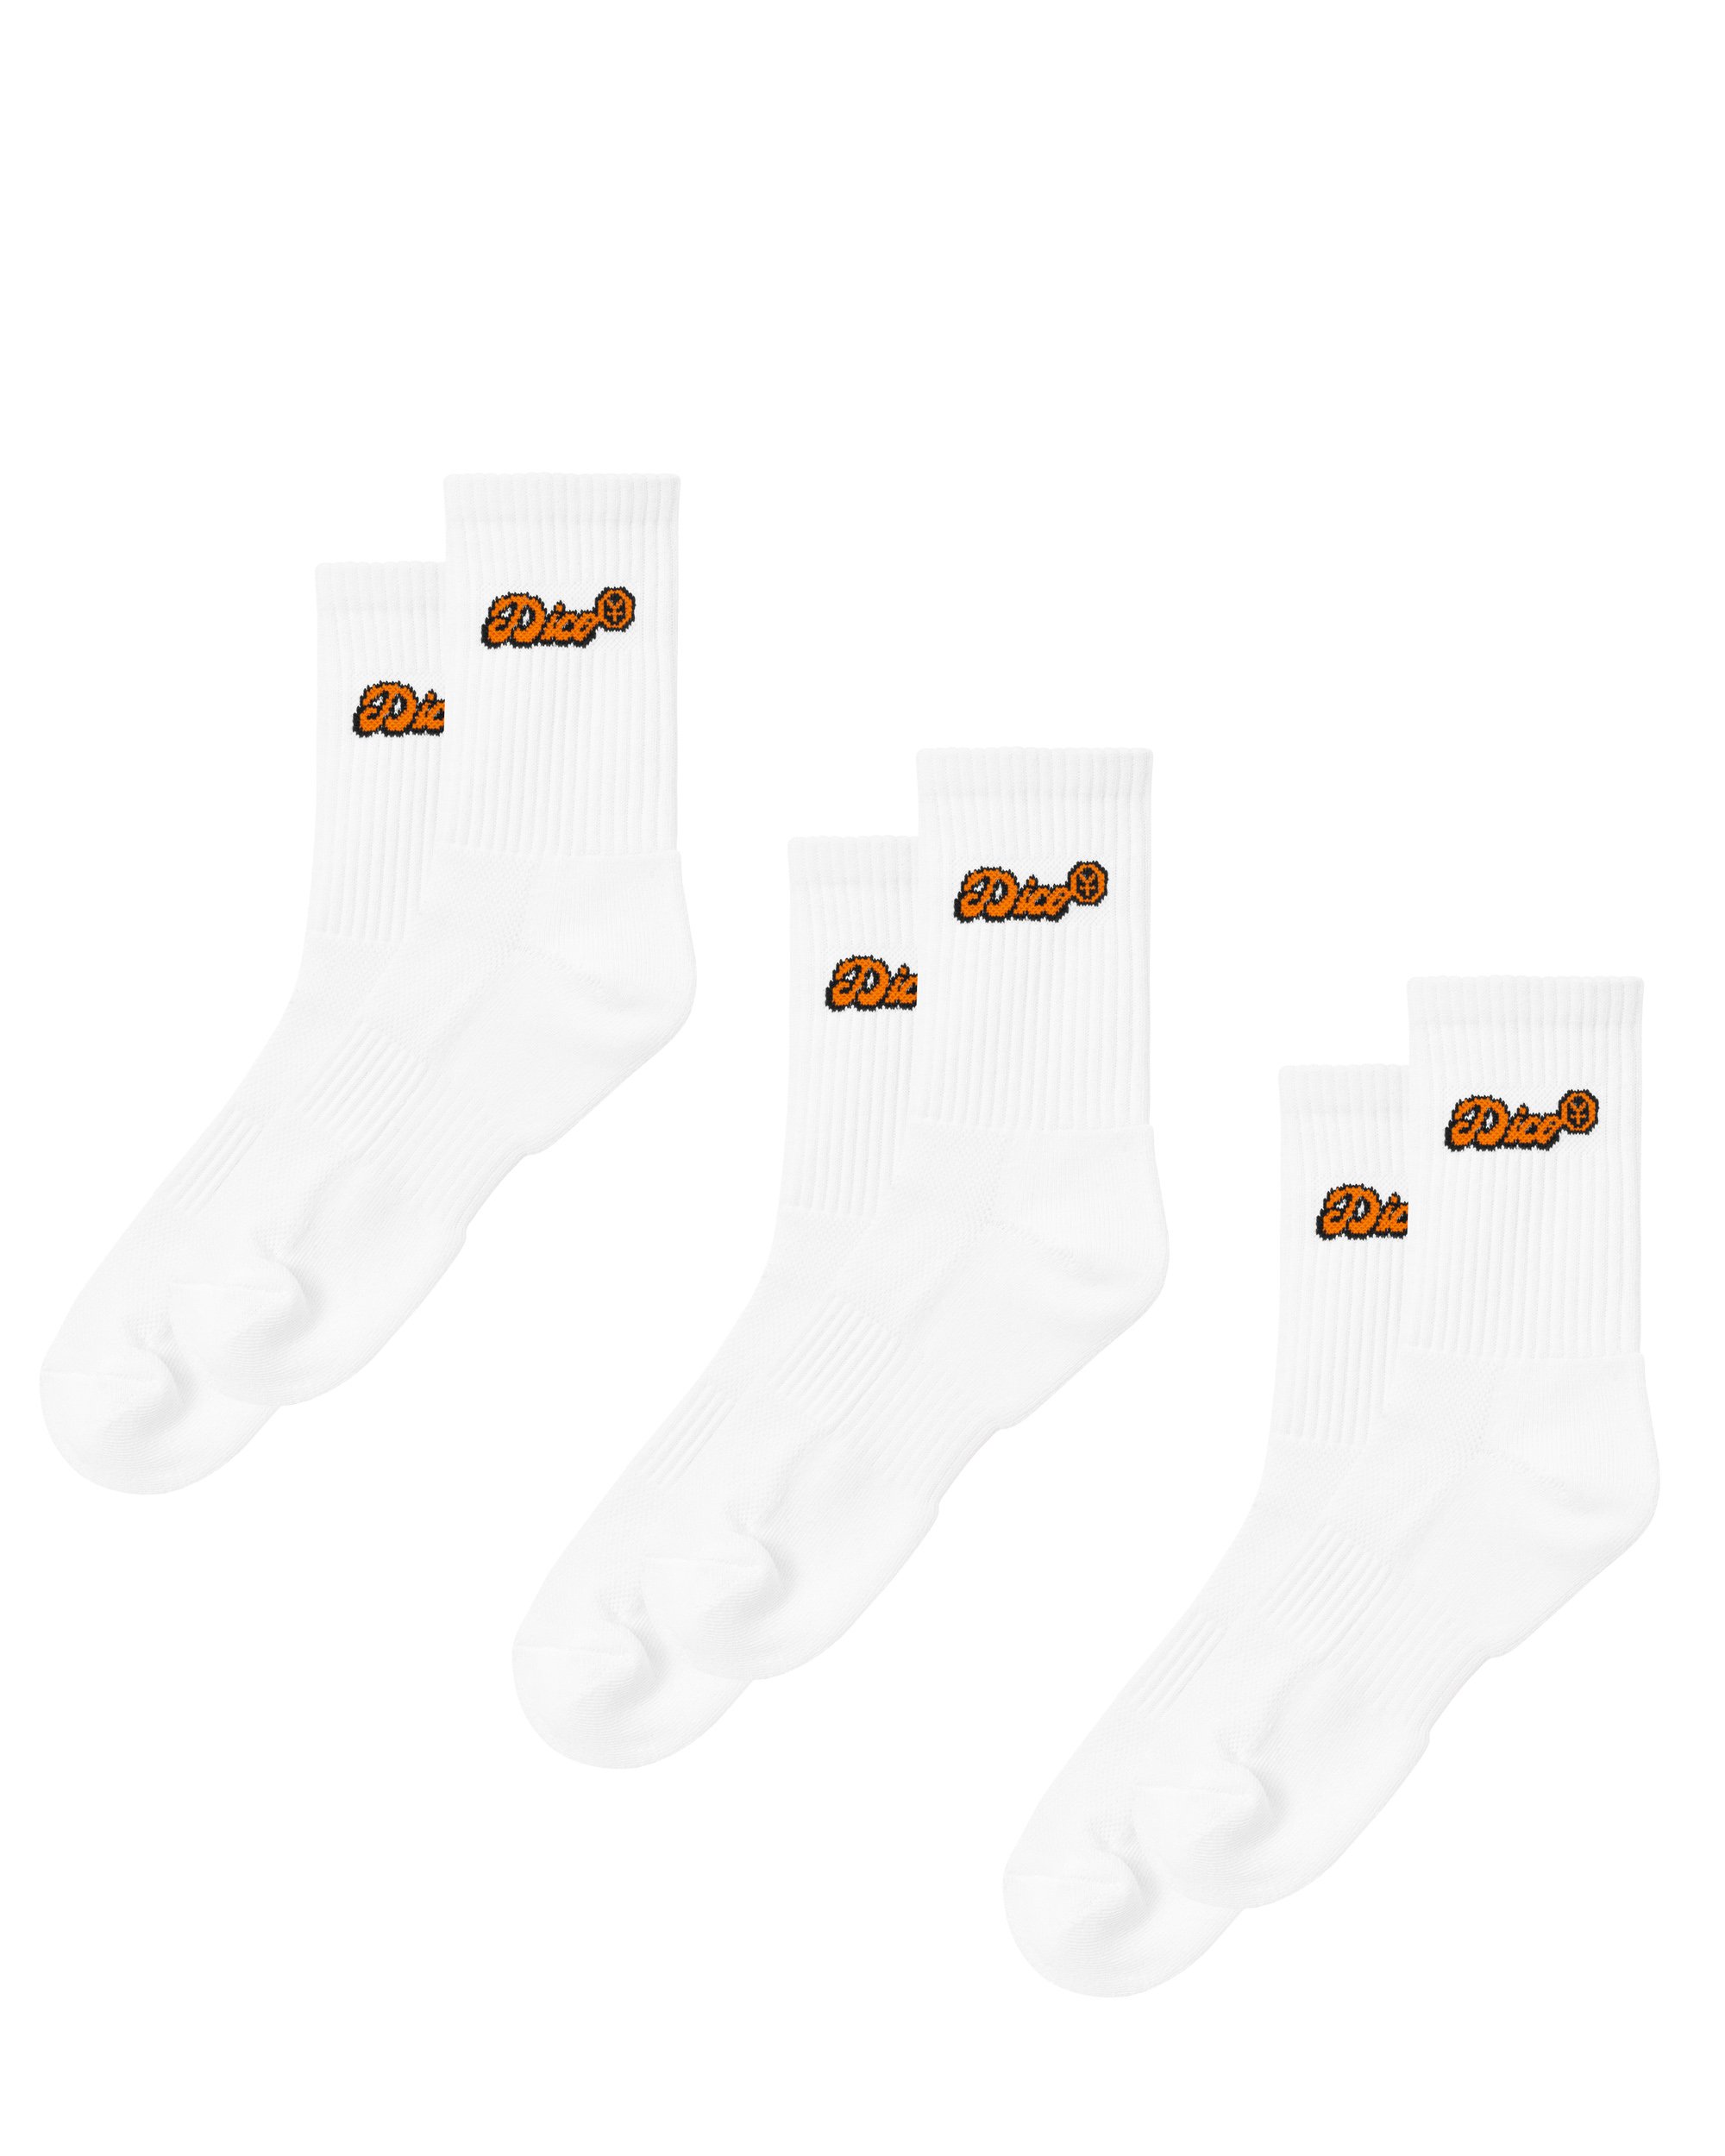 Dico Comfy Socks - Orange/White - Pack of 3